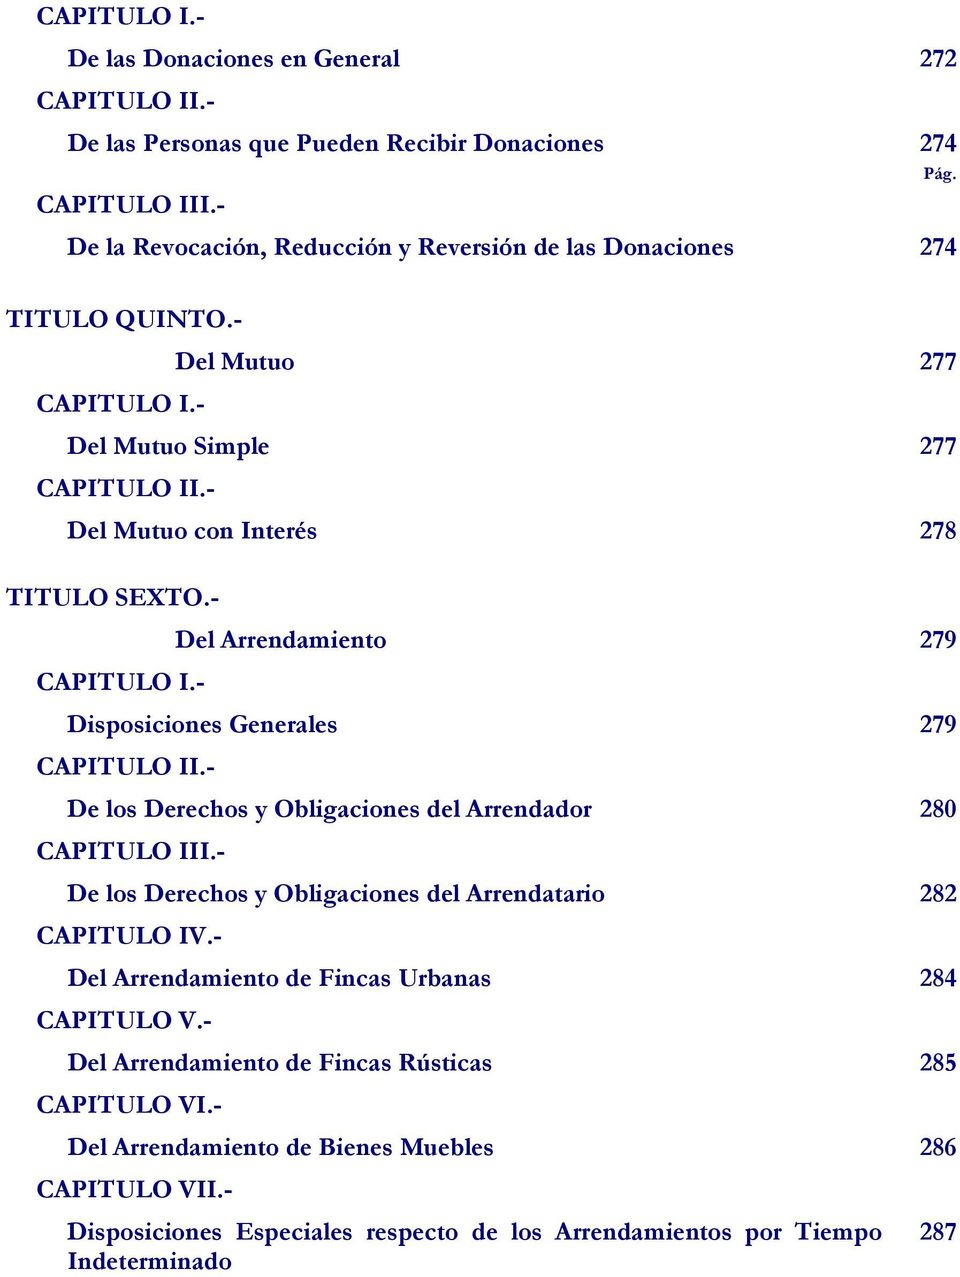 - Disposiciones Generales 279 CAPITULO II.- De los Derechos y Obligaciones del Arrendador 280 CAPITULO III.- De los Derechos y Obligaciones del Arrendatario 282 CAPITULO IV.